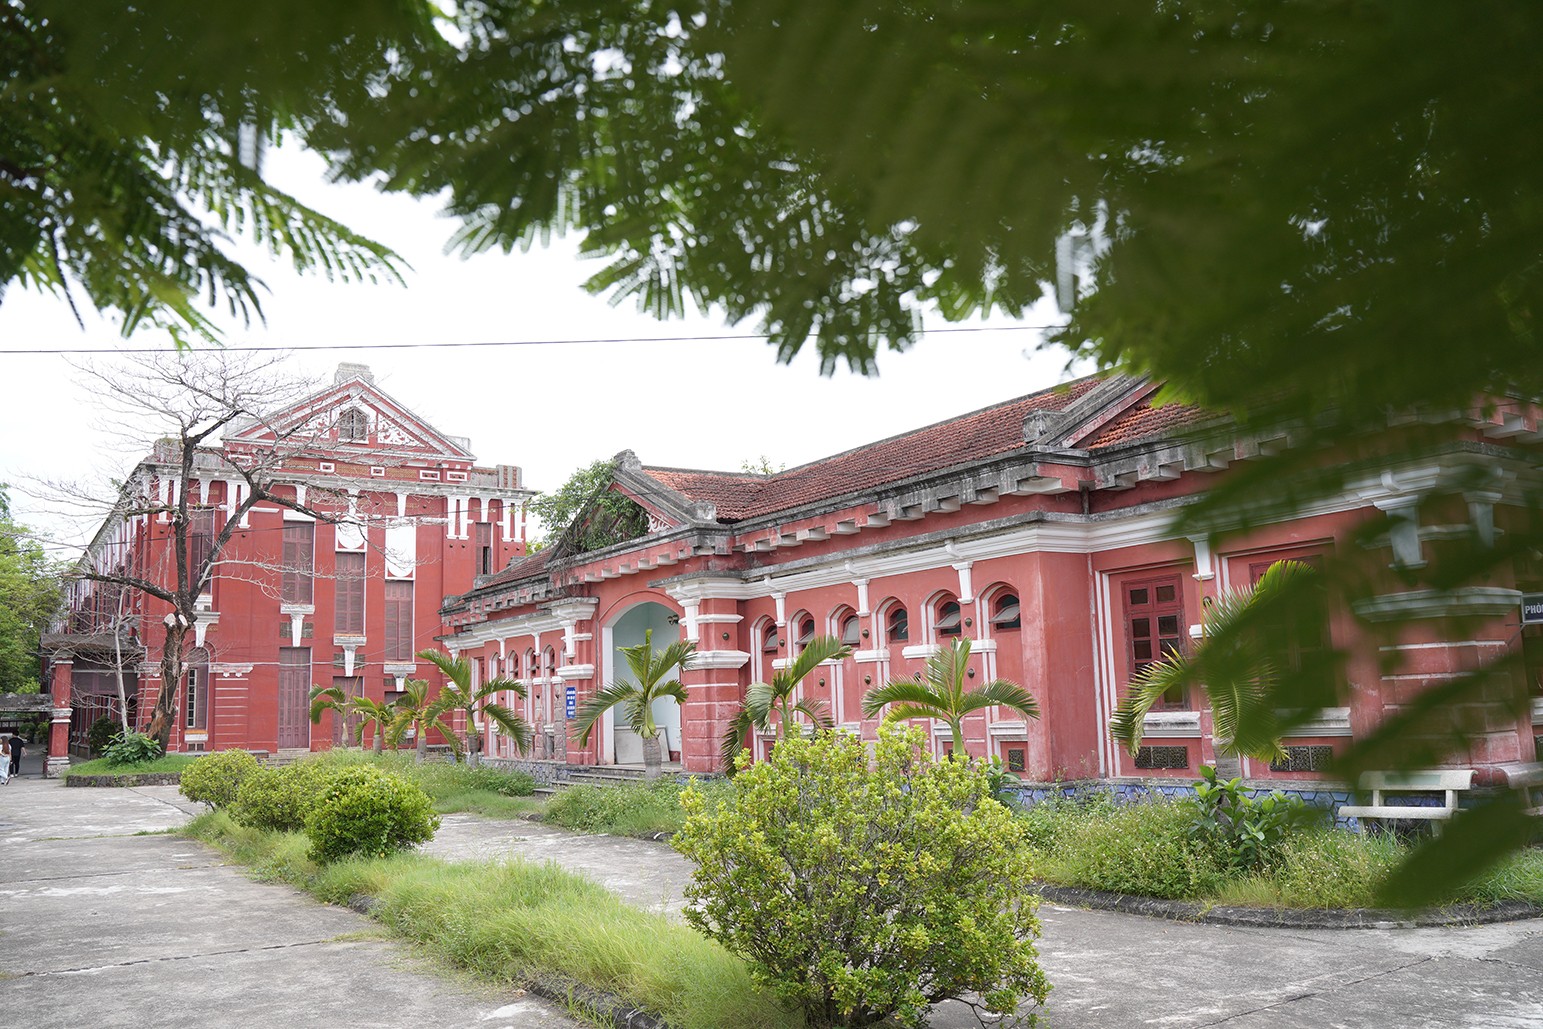 Trải qua lịch sử gần 130 năm, ngôi trường vẫn giữ được nét đẹp thật trang nghiêm và cổ kính.